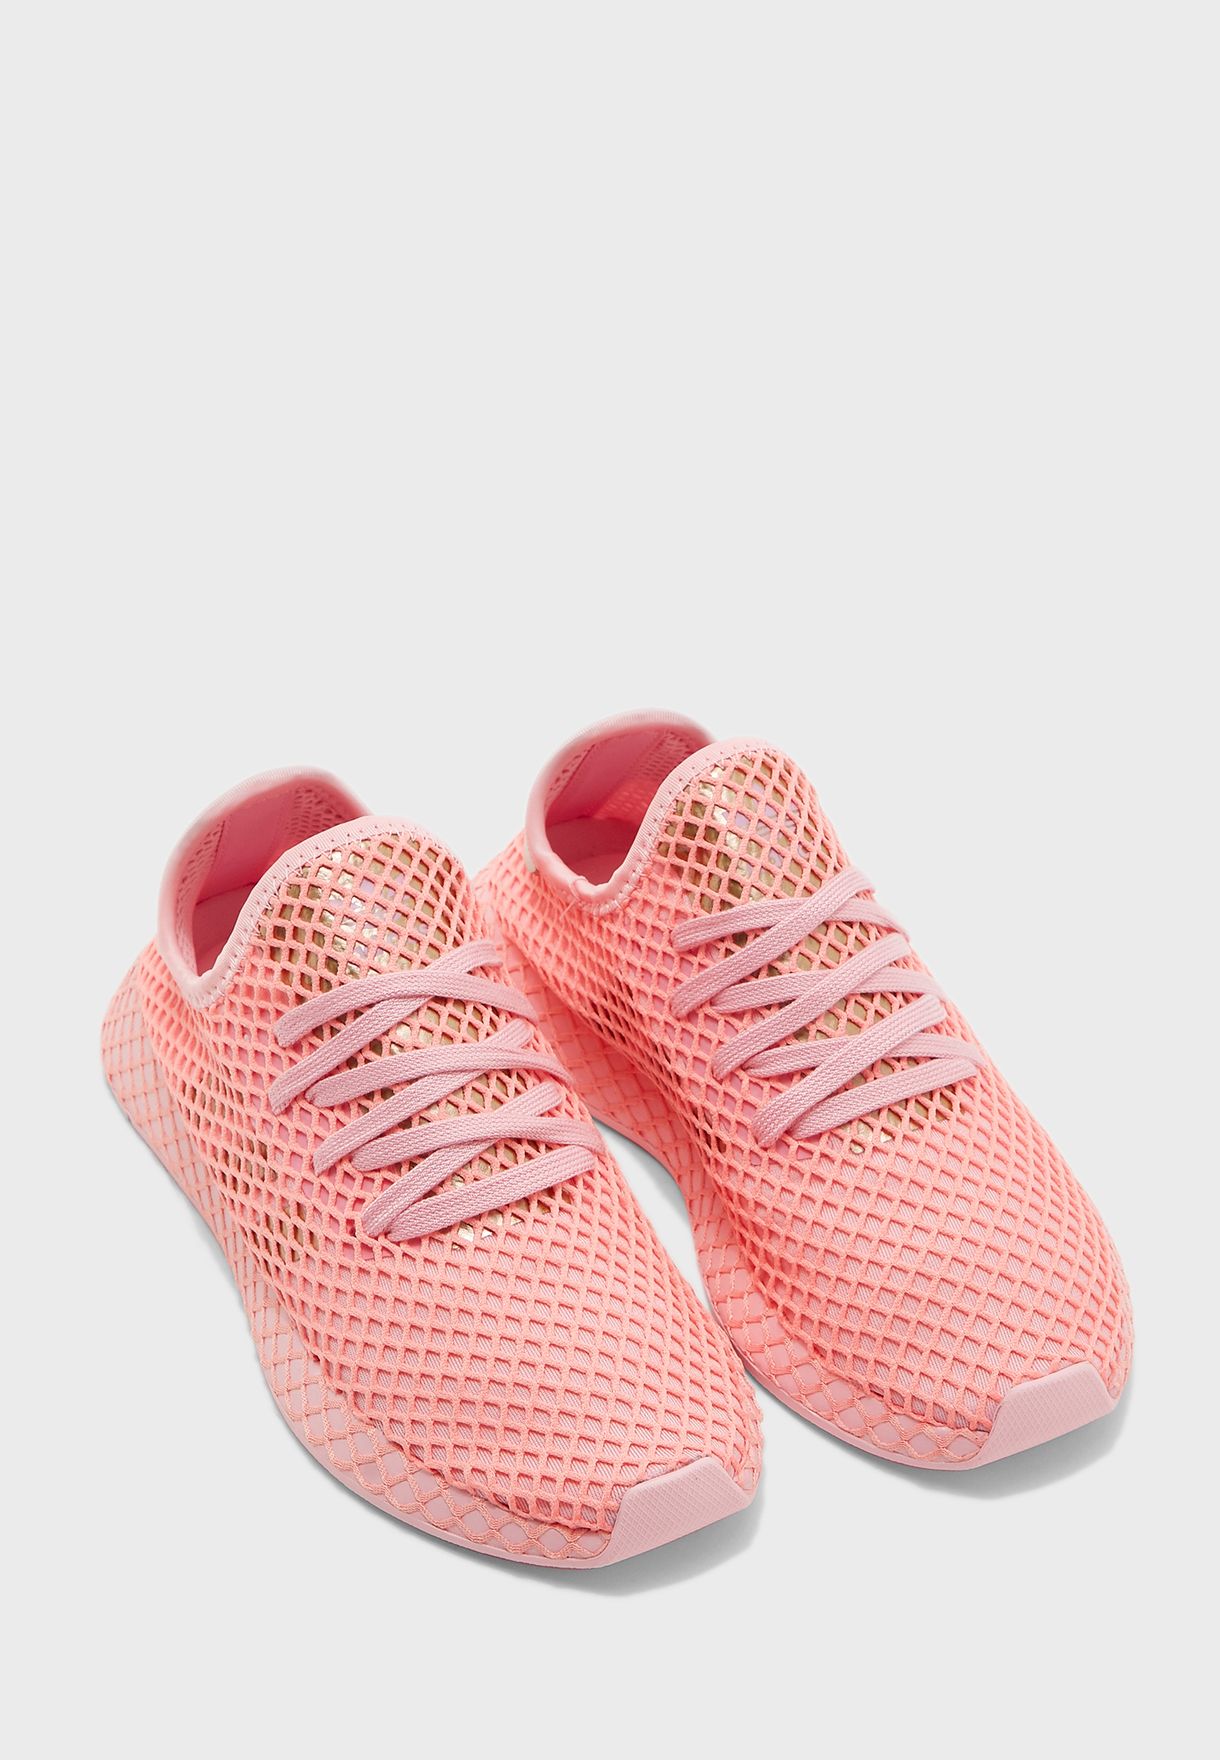 adidas originals deerupt pink